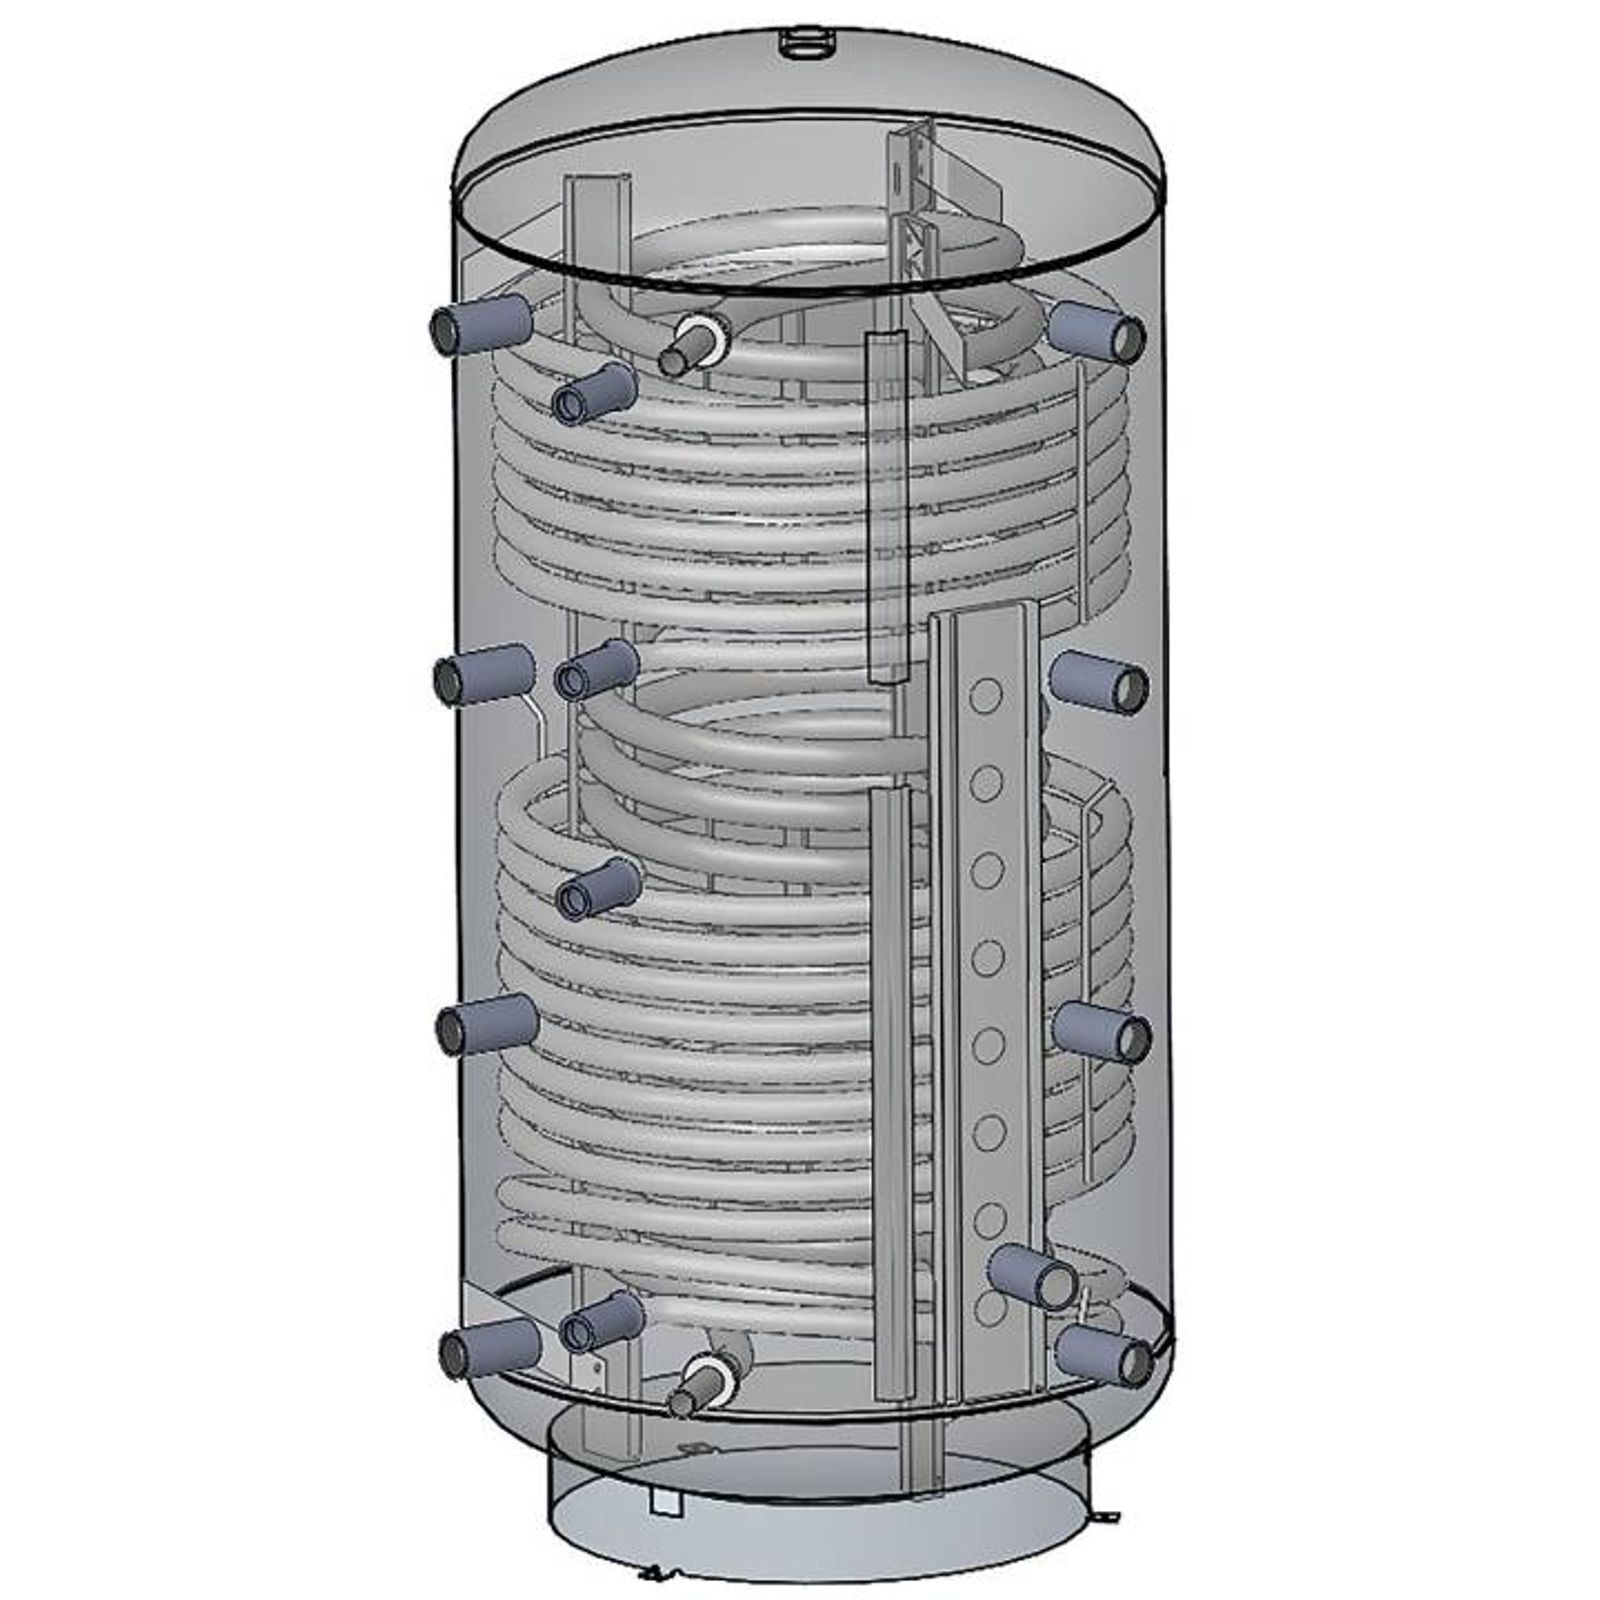 Kombi-Schichtspeicher 500 Liter mit einem Wärmetauscher und 100 mm Isolierung